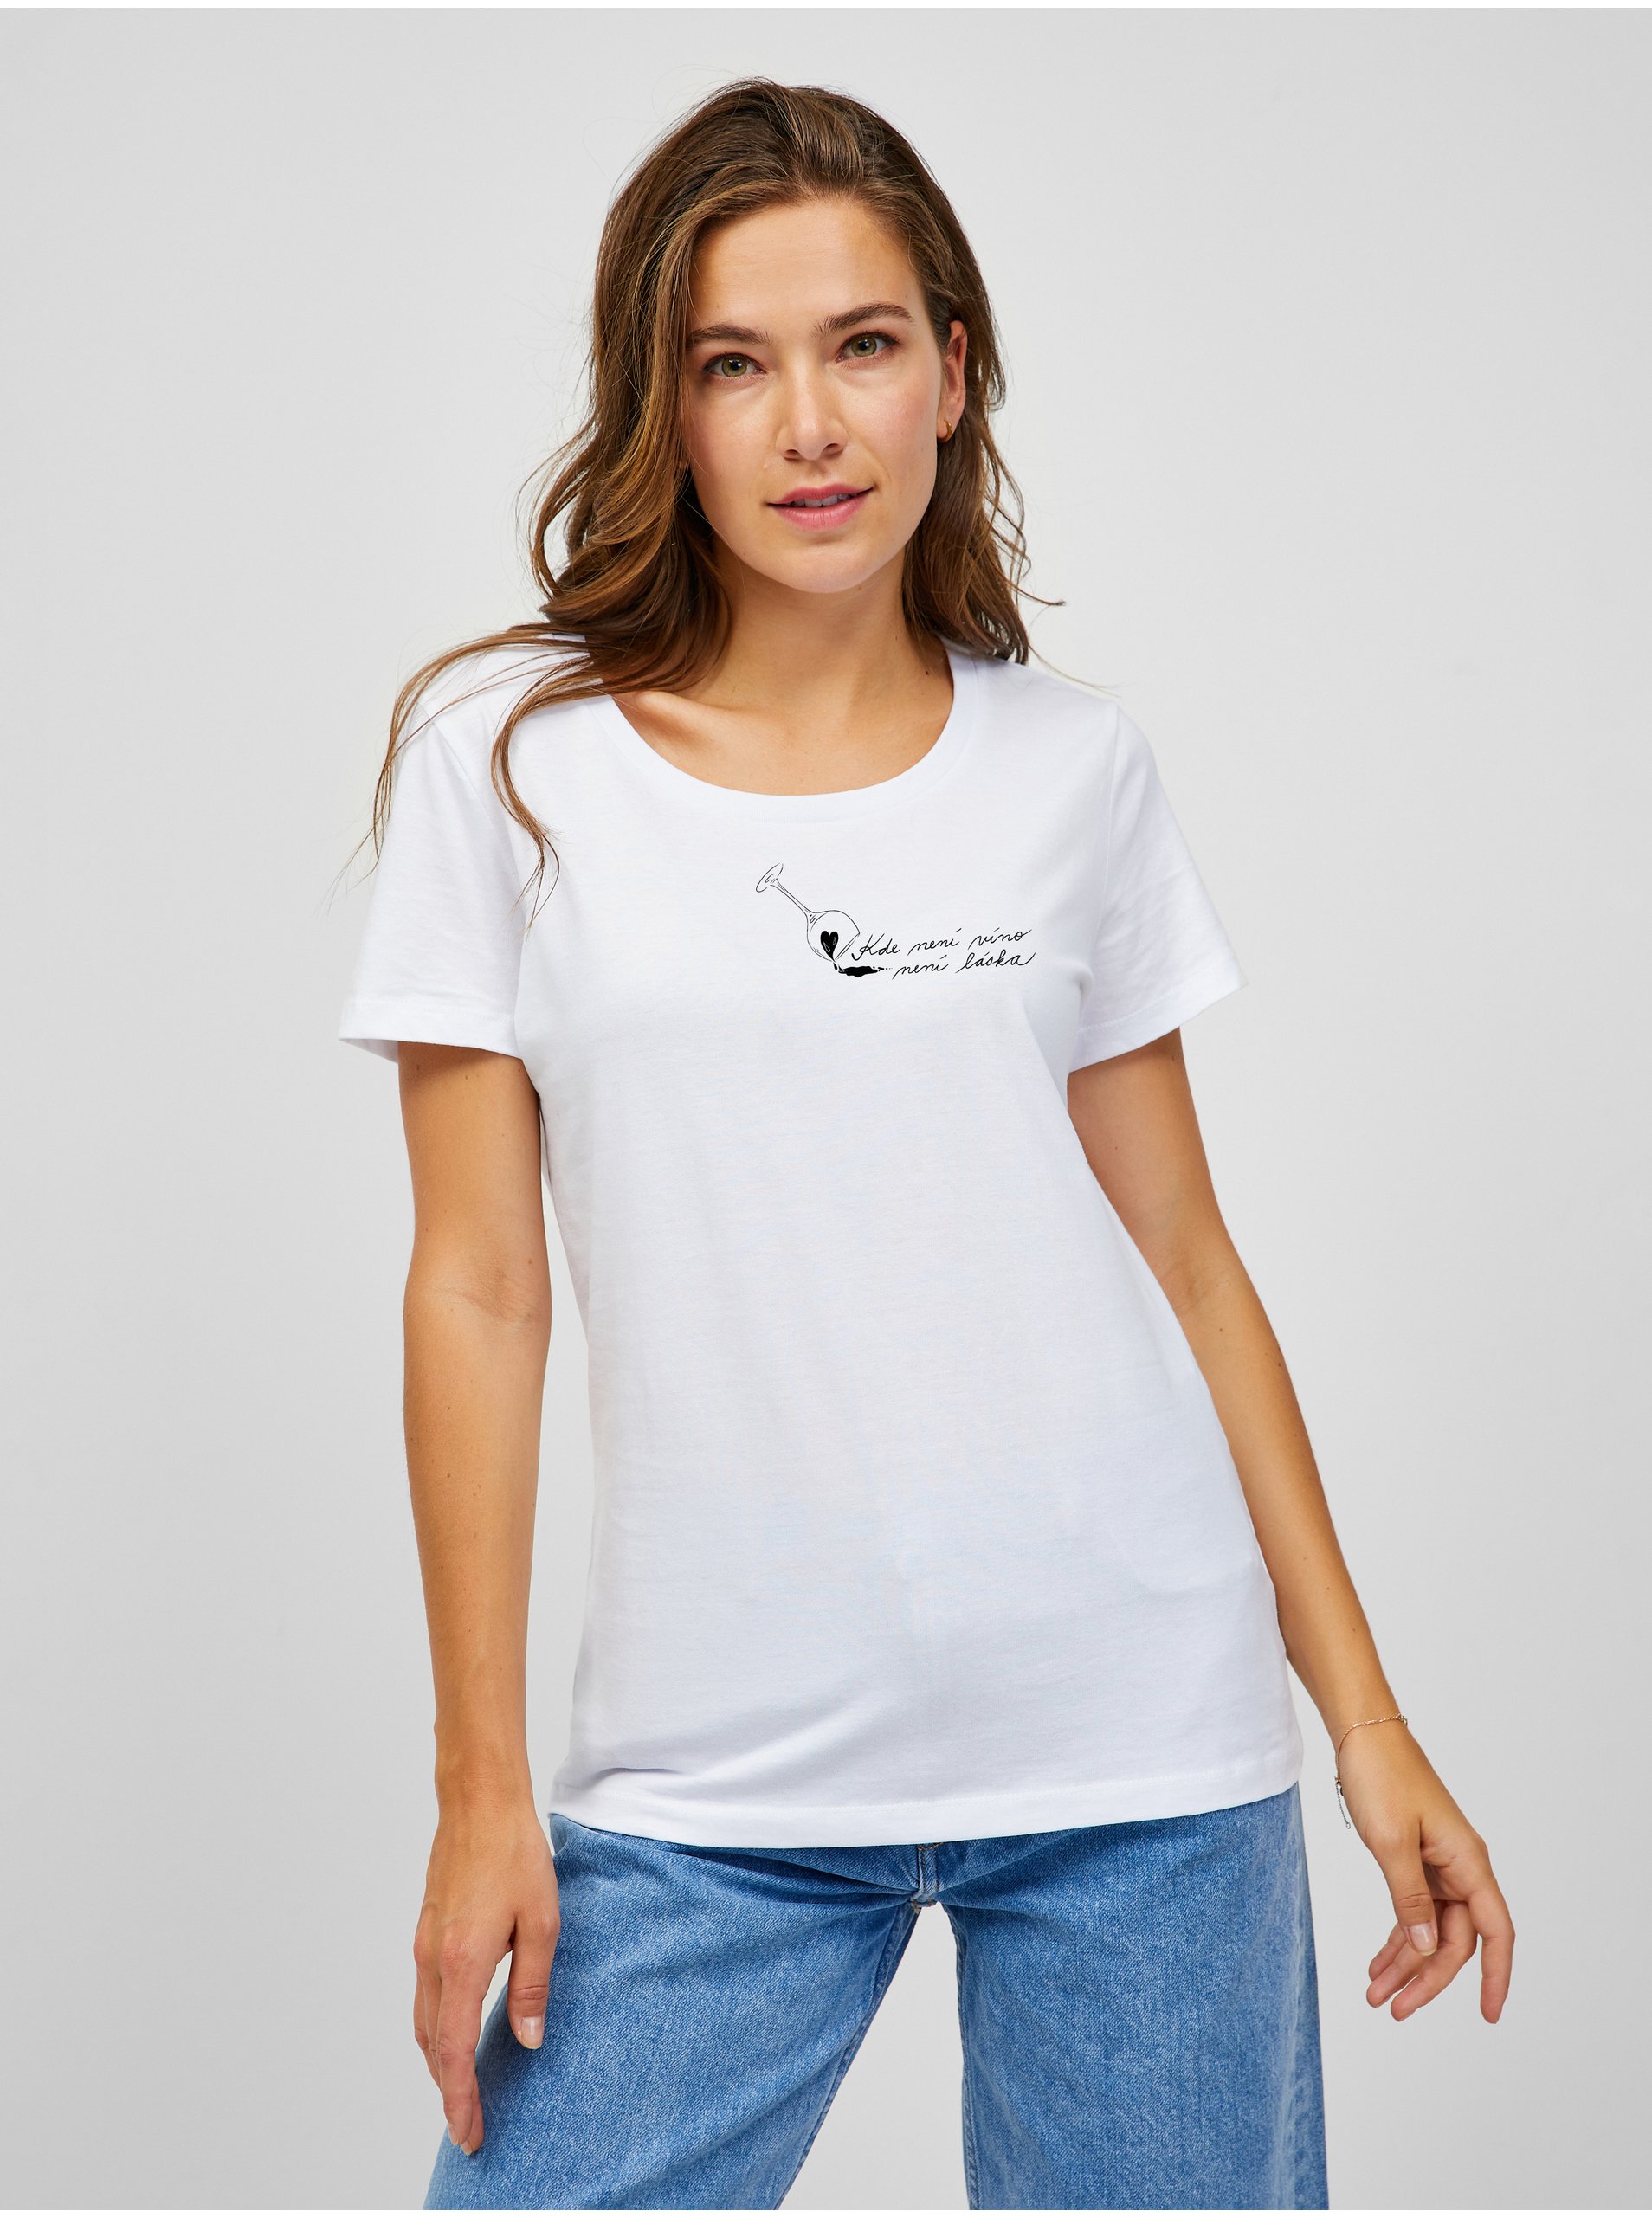 E-shop Bílé dámské tričko Zoot Original Kde není víno